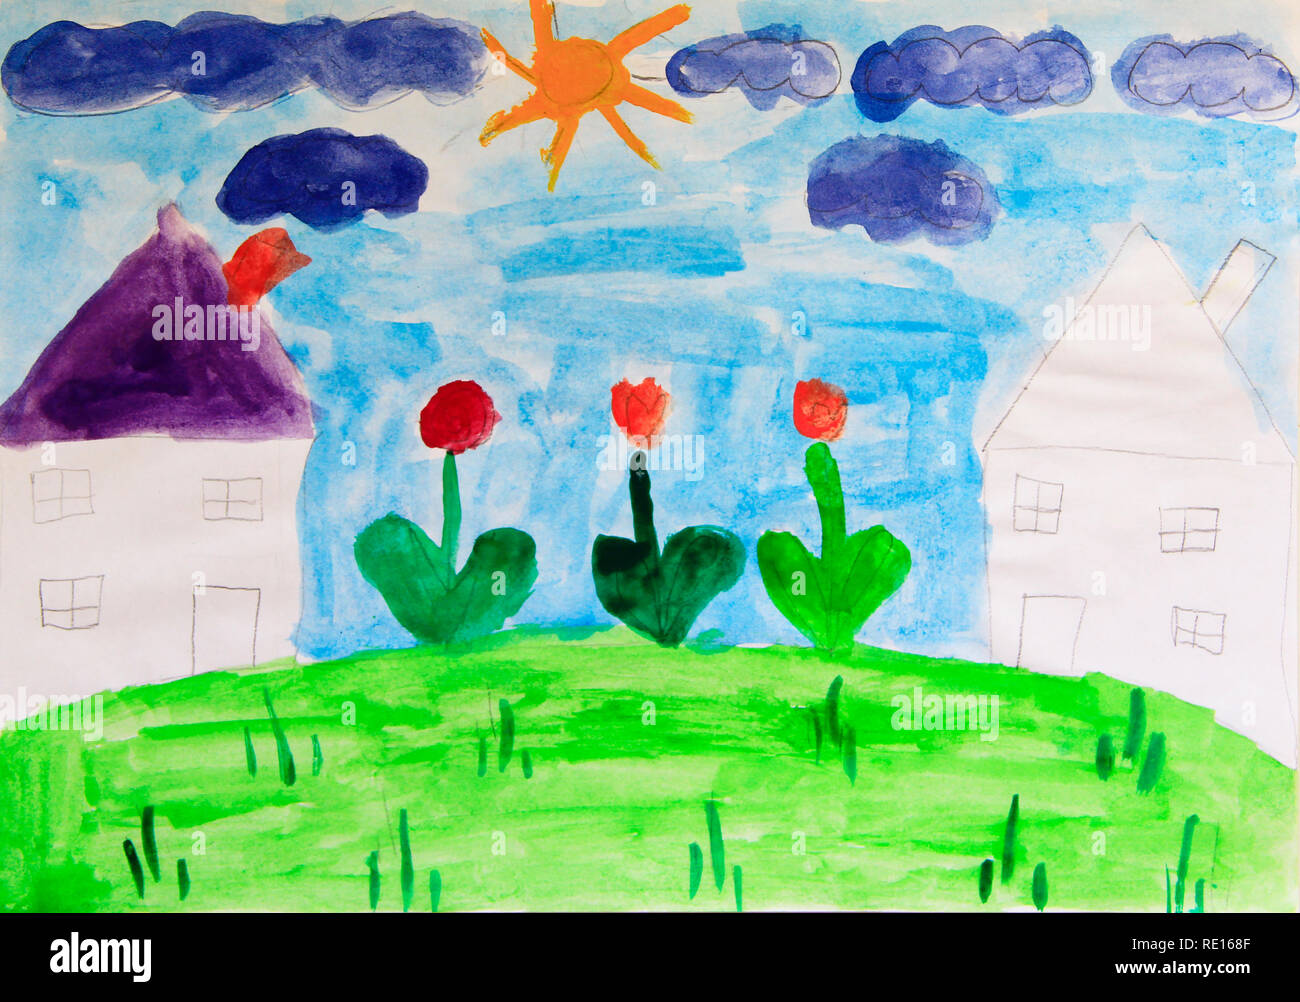 https://c8.alamy.com/compit/re168f/bambino-del-disegno-di-case-prato-e-fiori-colori-luminosi-dell-estate-arte-infantile-illustrazione-disegnata-da-acquerelli-disegno-per-bambini-vernice-ad-acquerello-re168f.jpg